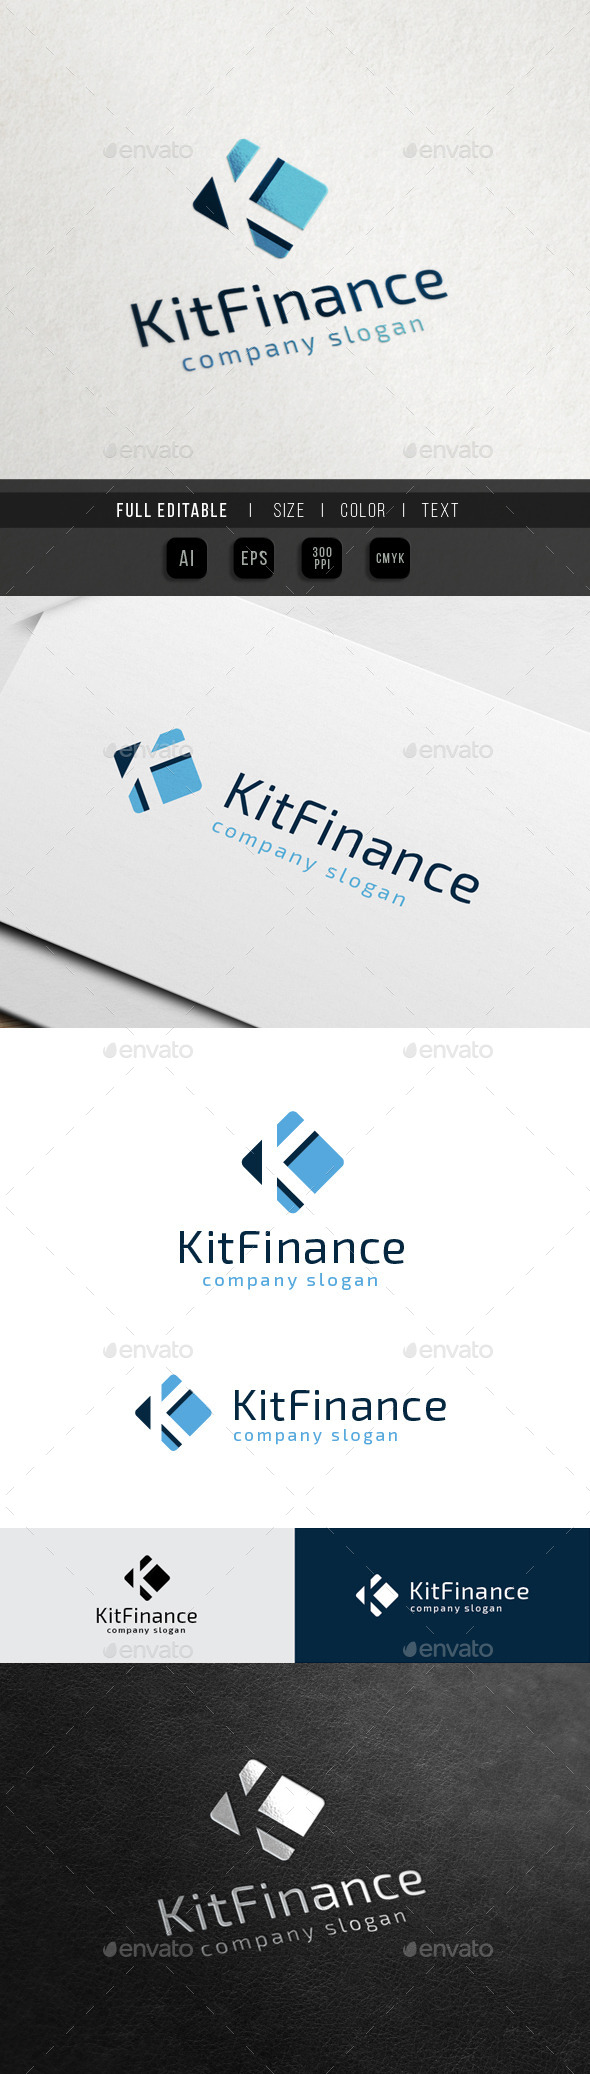 Finance Marketing - Letter K